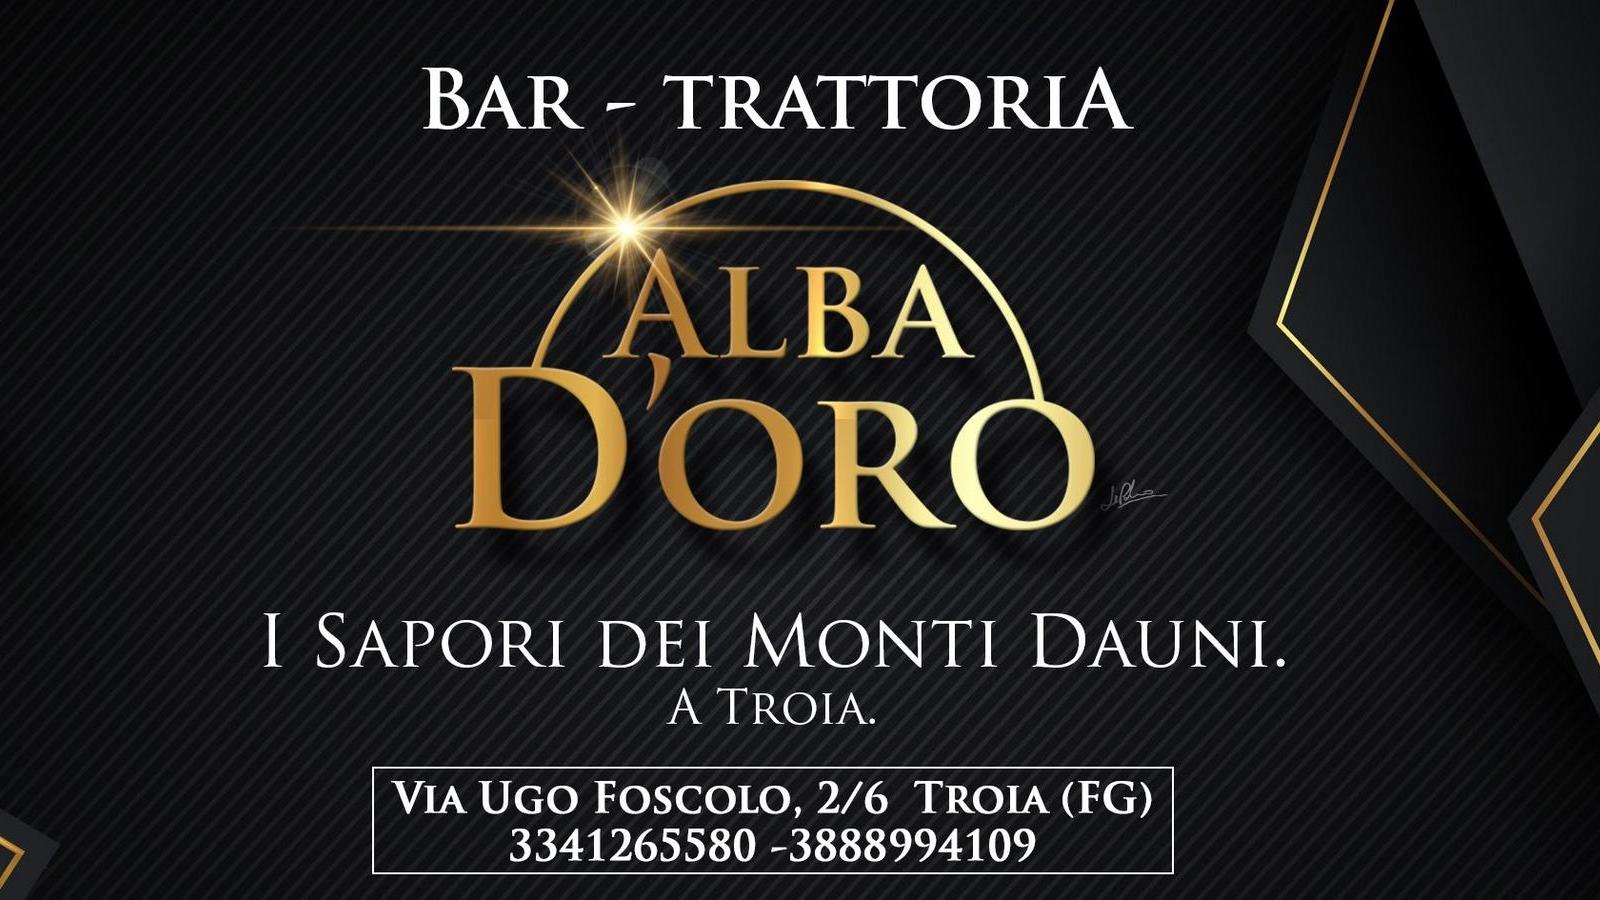 Dove mangiare a Troia - Trattoria Alba d'Oro | Localtourism.it